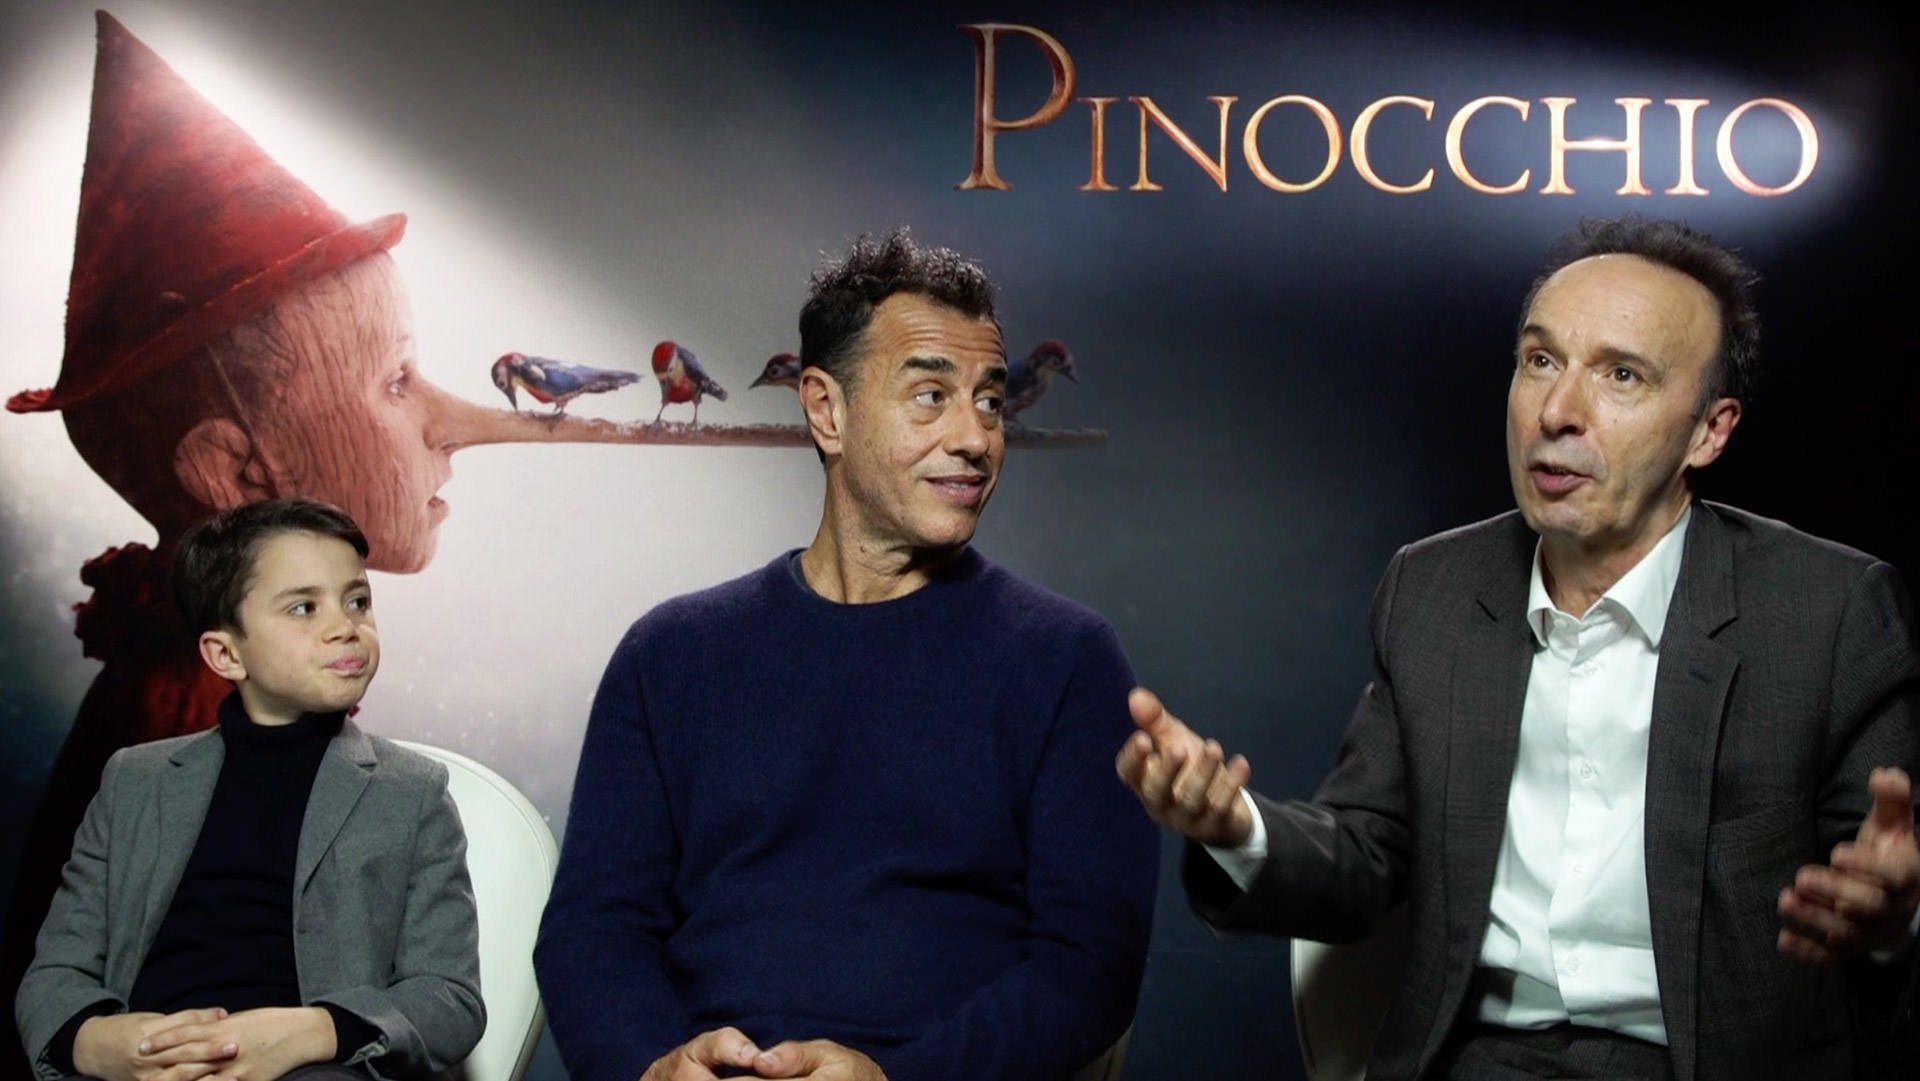 فیلم پینوکیو با بازی روبرتو بنینی در کریسمس ۲۰۲۰ روی پرده سینماهای آمریکا خواهد رفت 